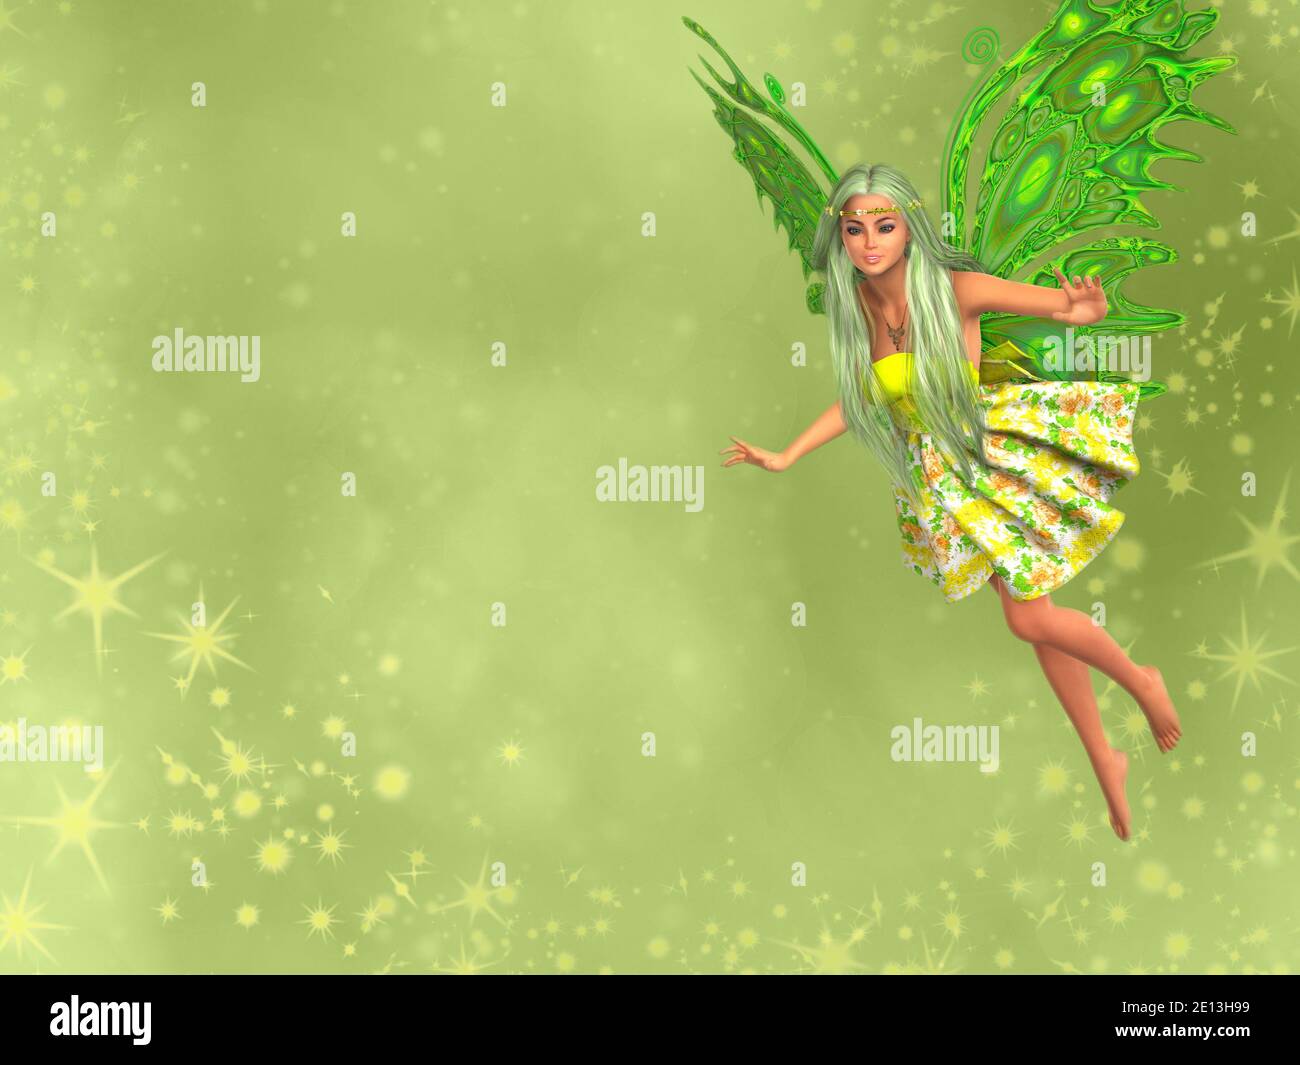 Hada primaveral con alas verdes y pelo largo volando, fondo verde bokeh con estrellas. Renderizado en 3D. Foto de stock